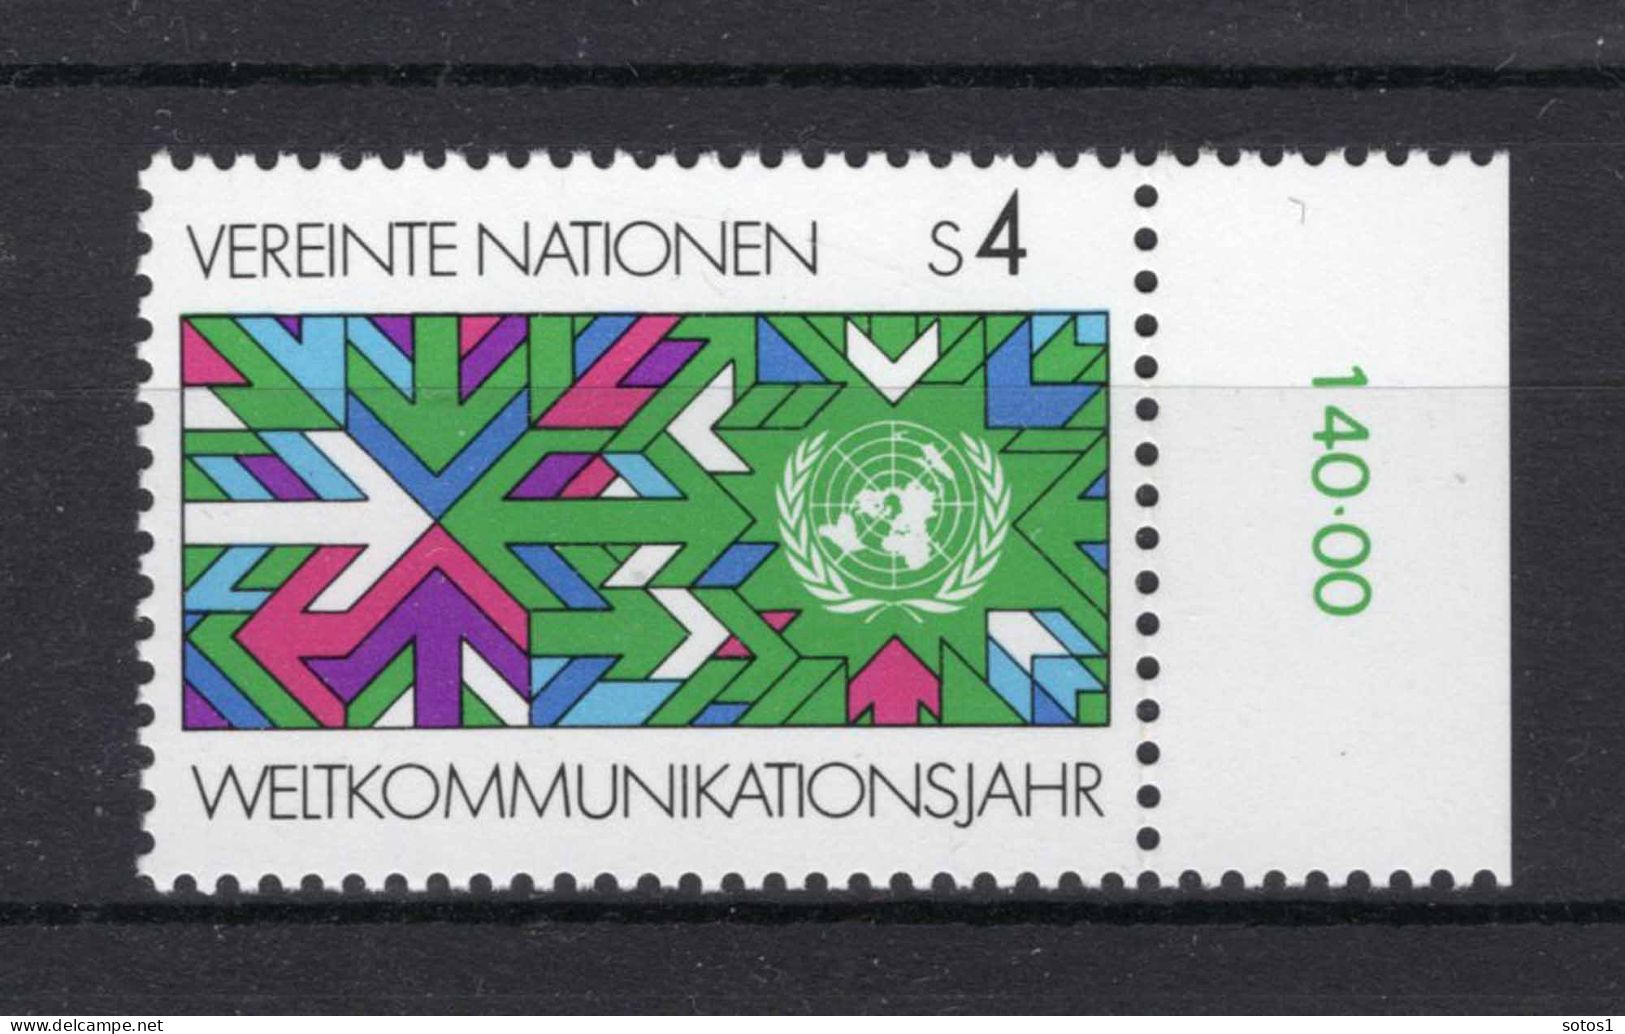 VERENIGDE NATIES-WENEN Yt. 29 MNH 1983 - Unused Stamps